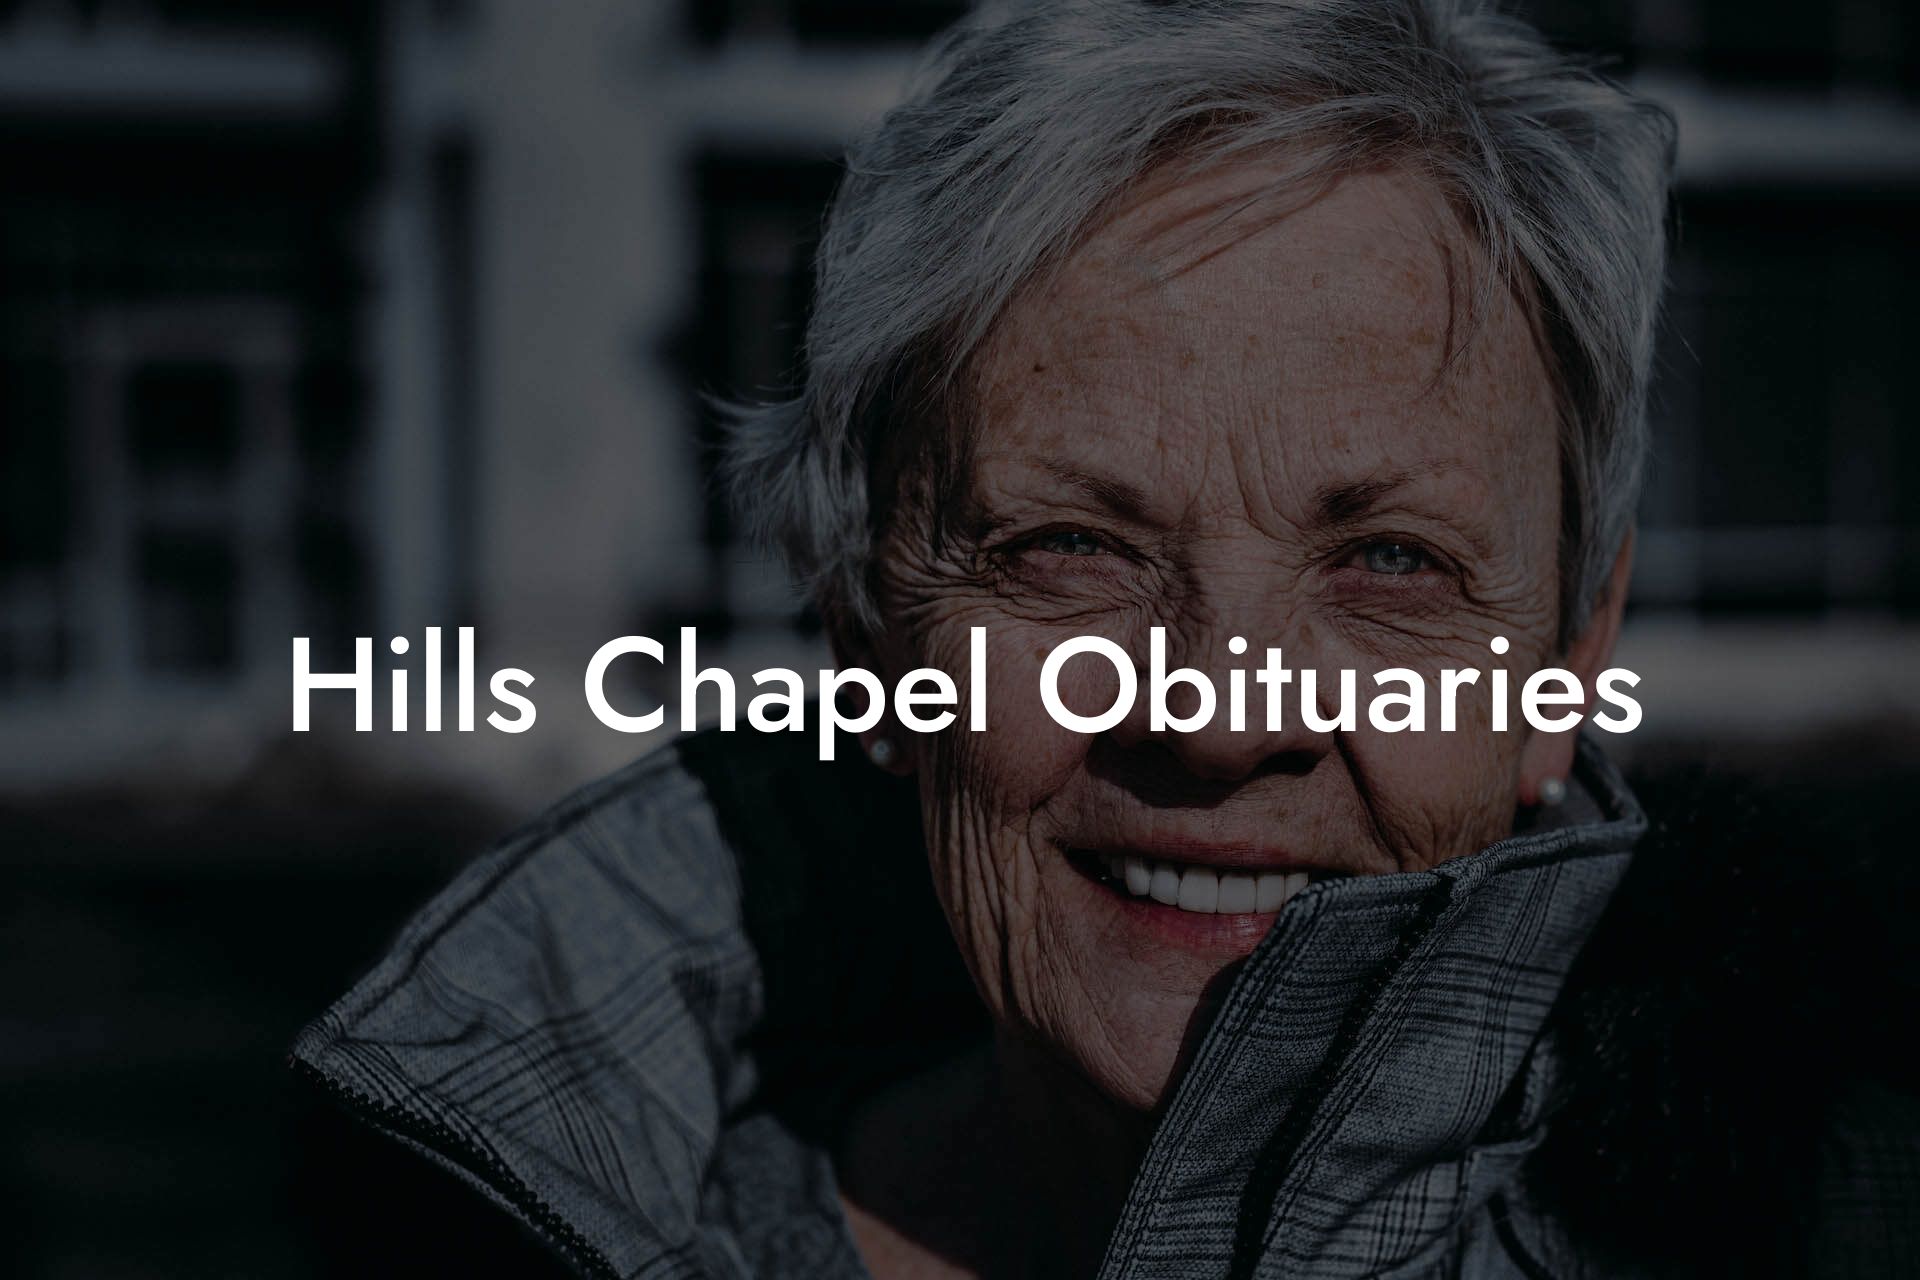 Hills Chapel Obituaries